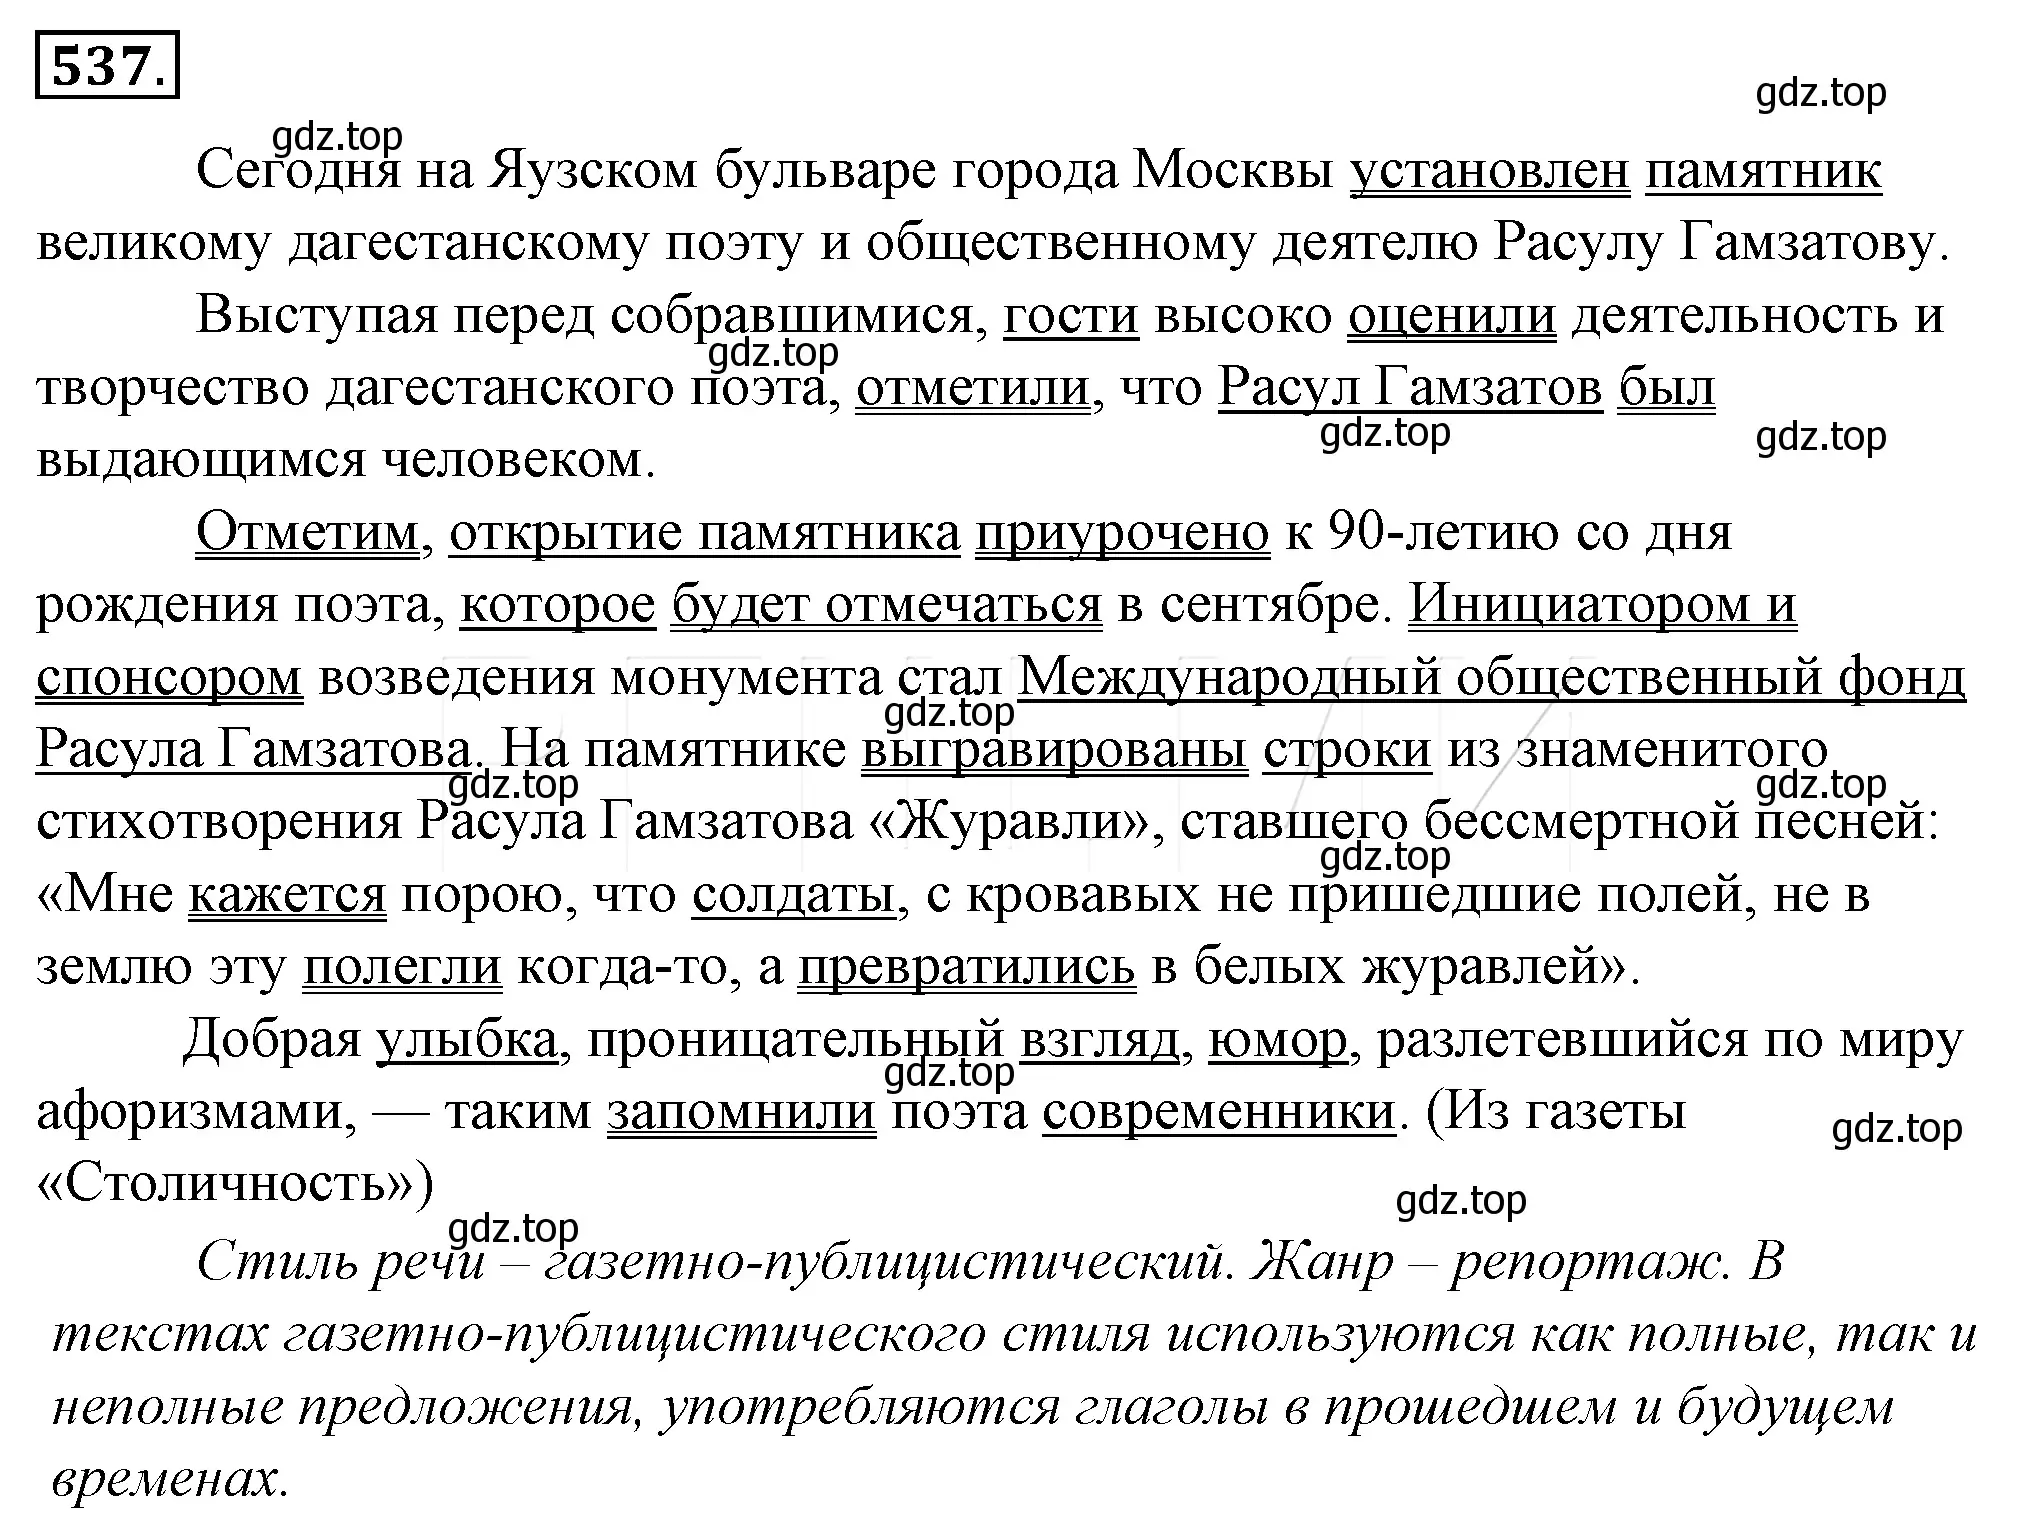 Решение 4. номер 213 (страница 294) гдз по русскому языку 10-11 класс Гольцова, Шамшин, учебник 2 часть